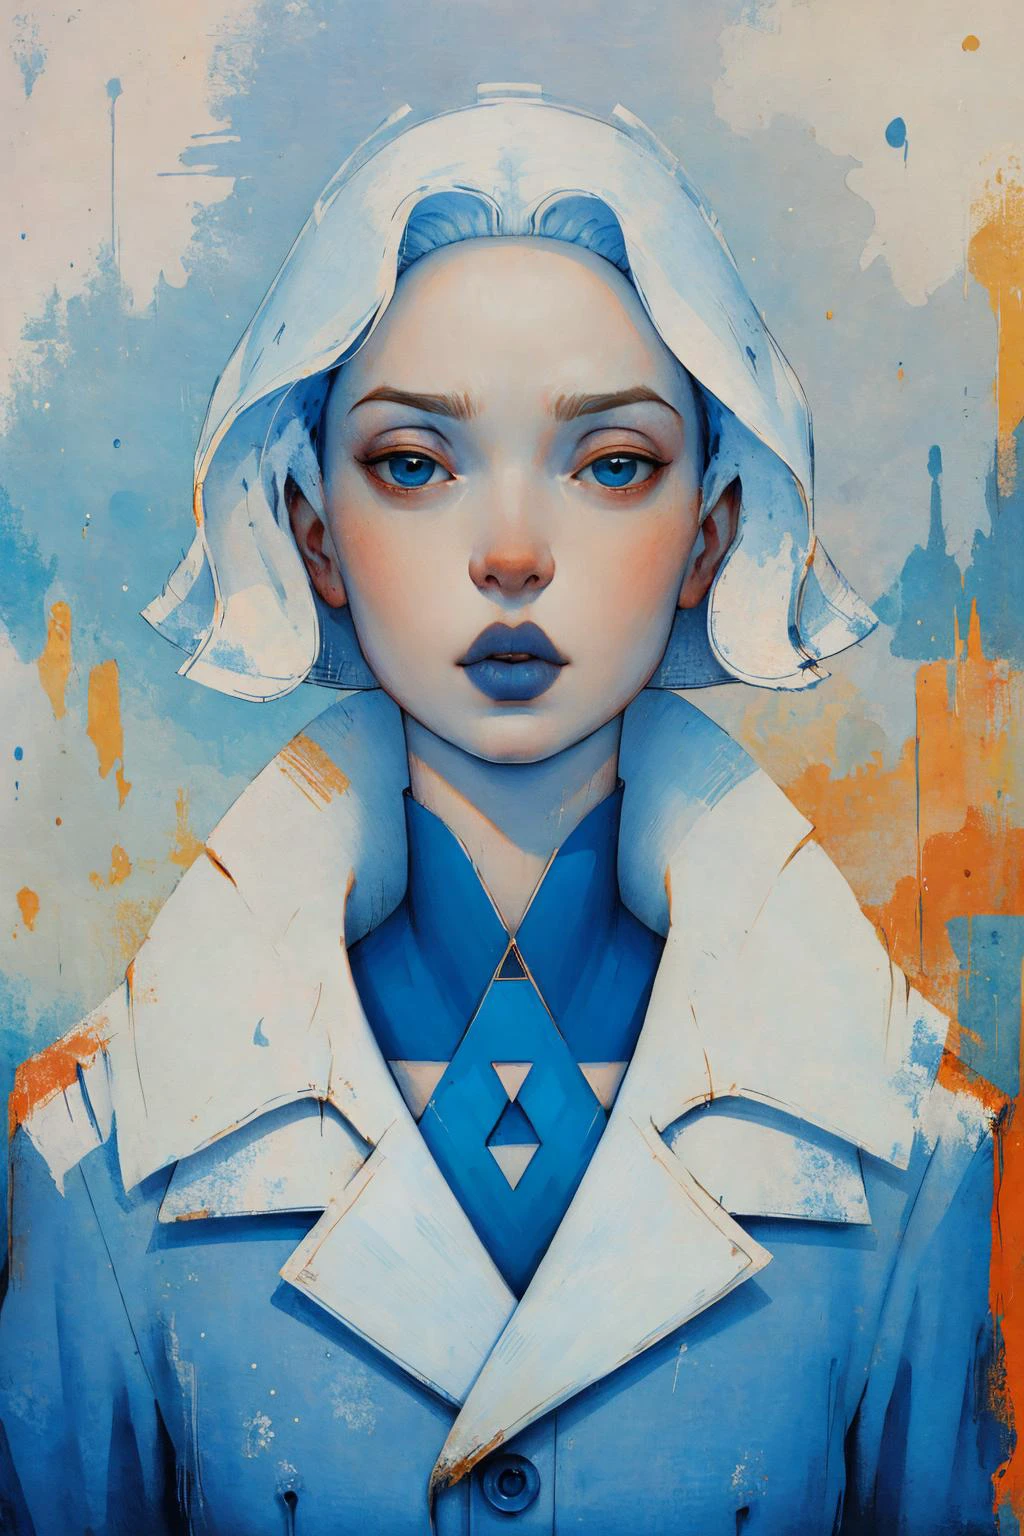 安基摩爾 1 位女性的肖像, 外套, 皮膚蒼白, (藍眼睛, 藍色短髮, 藍色的嘴唇), 看法,
( 作者：恩基·比拉爾)
 負空間
(傑作, 最好的品質, 美麗又美觀:1.2),
 